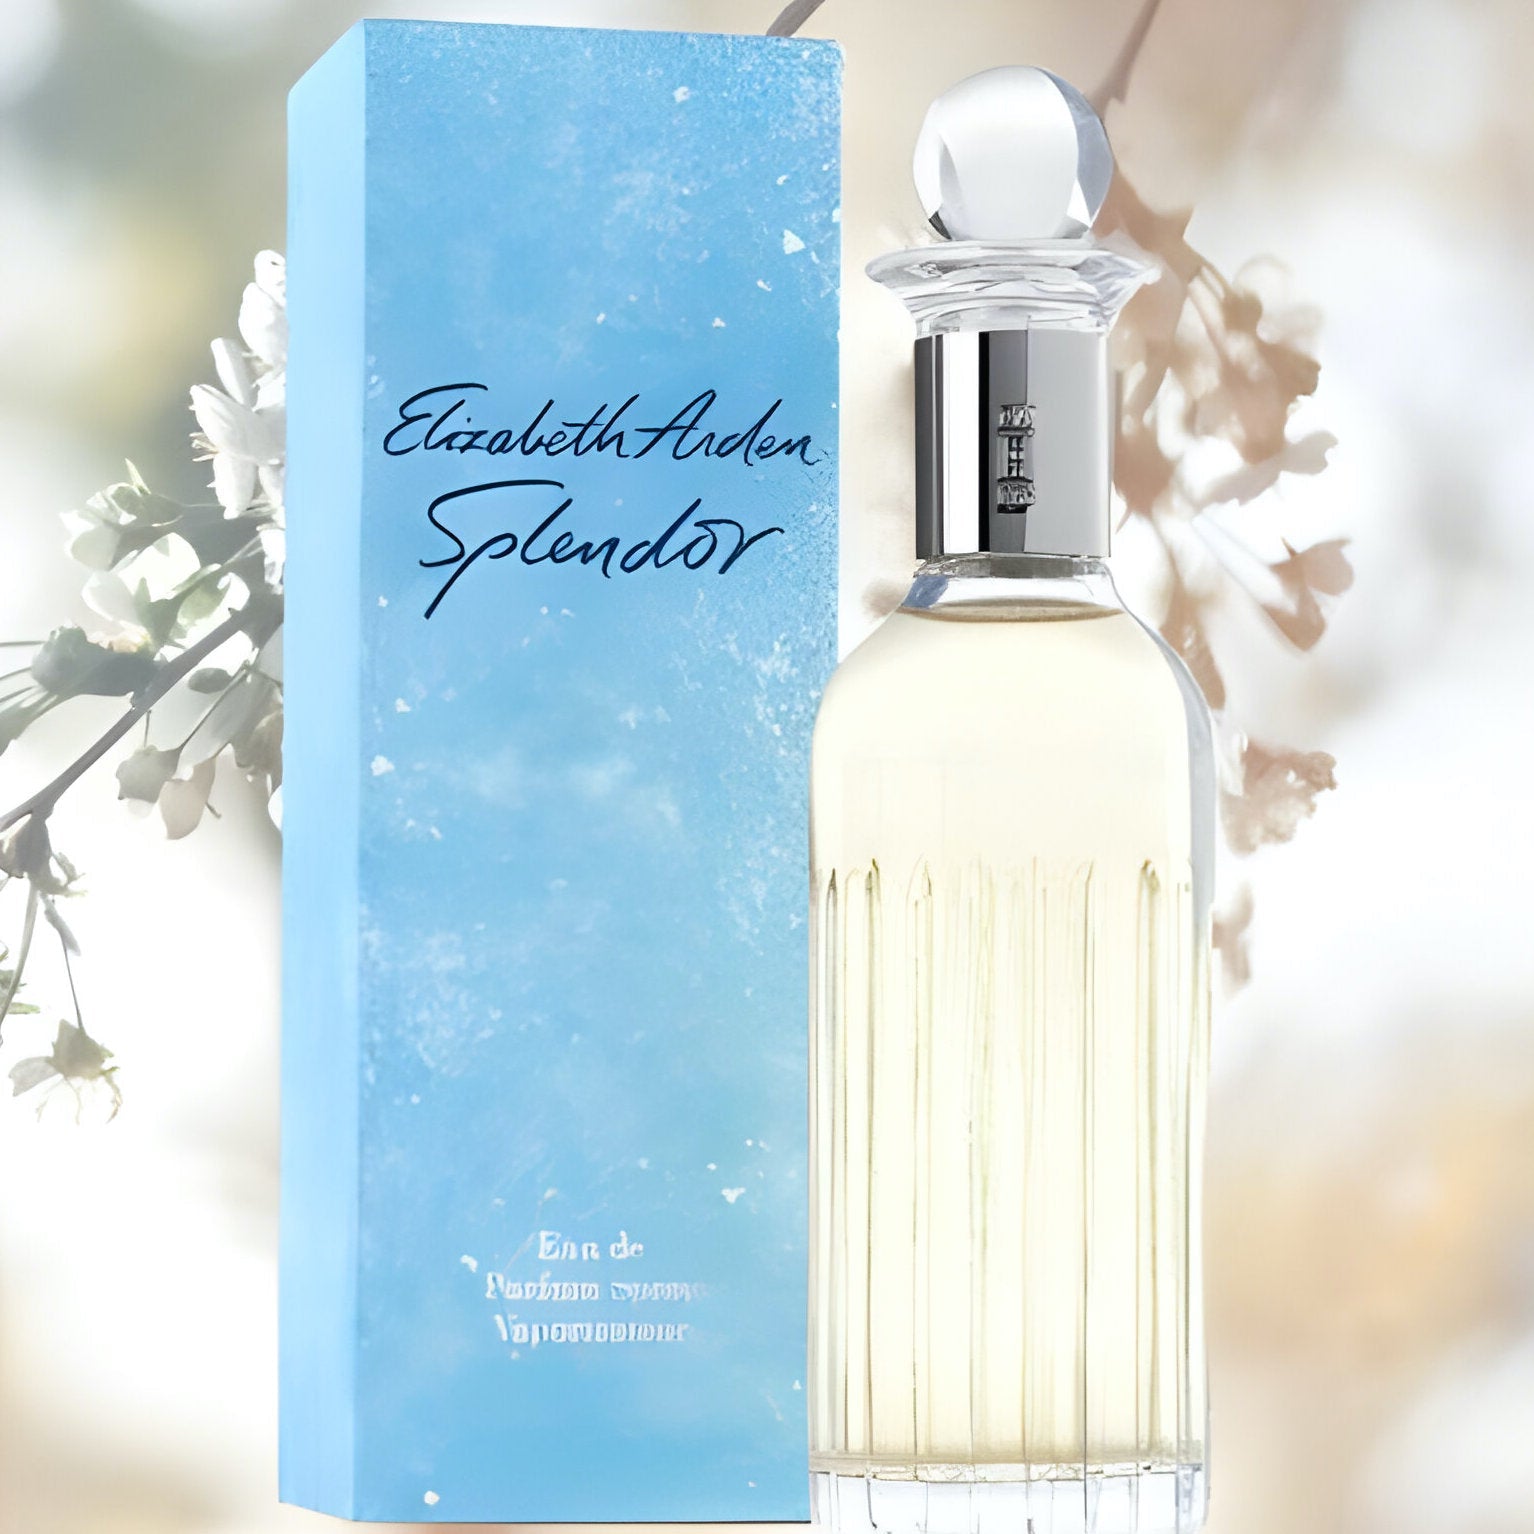 Elizabeth Arden Splendor EDP | My Perfume Shop Australia